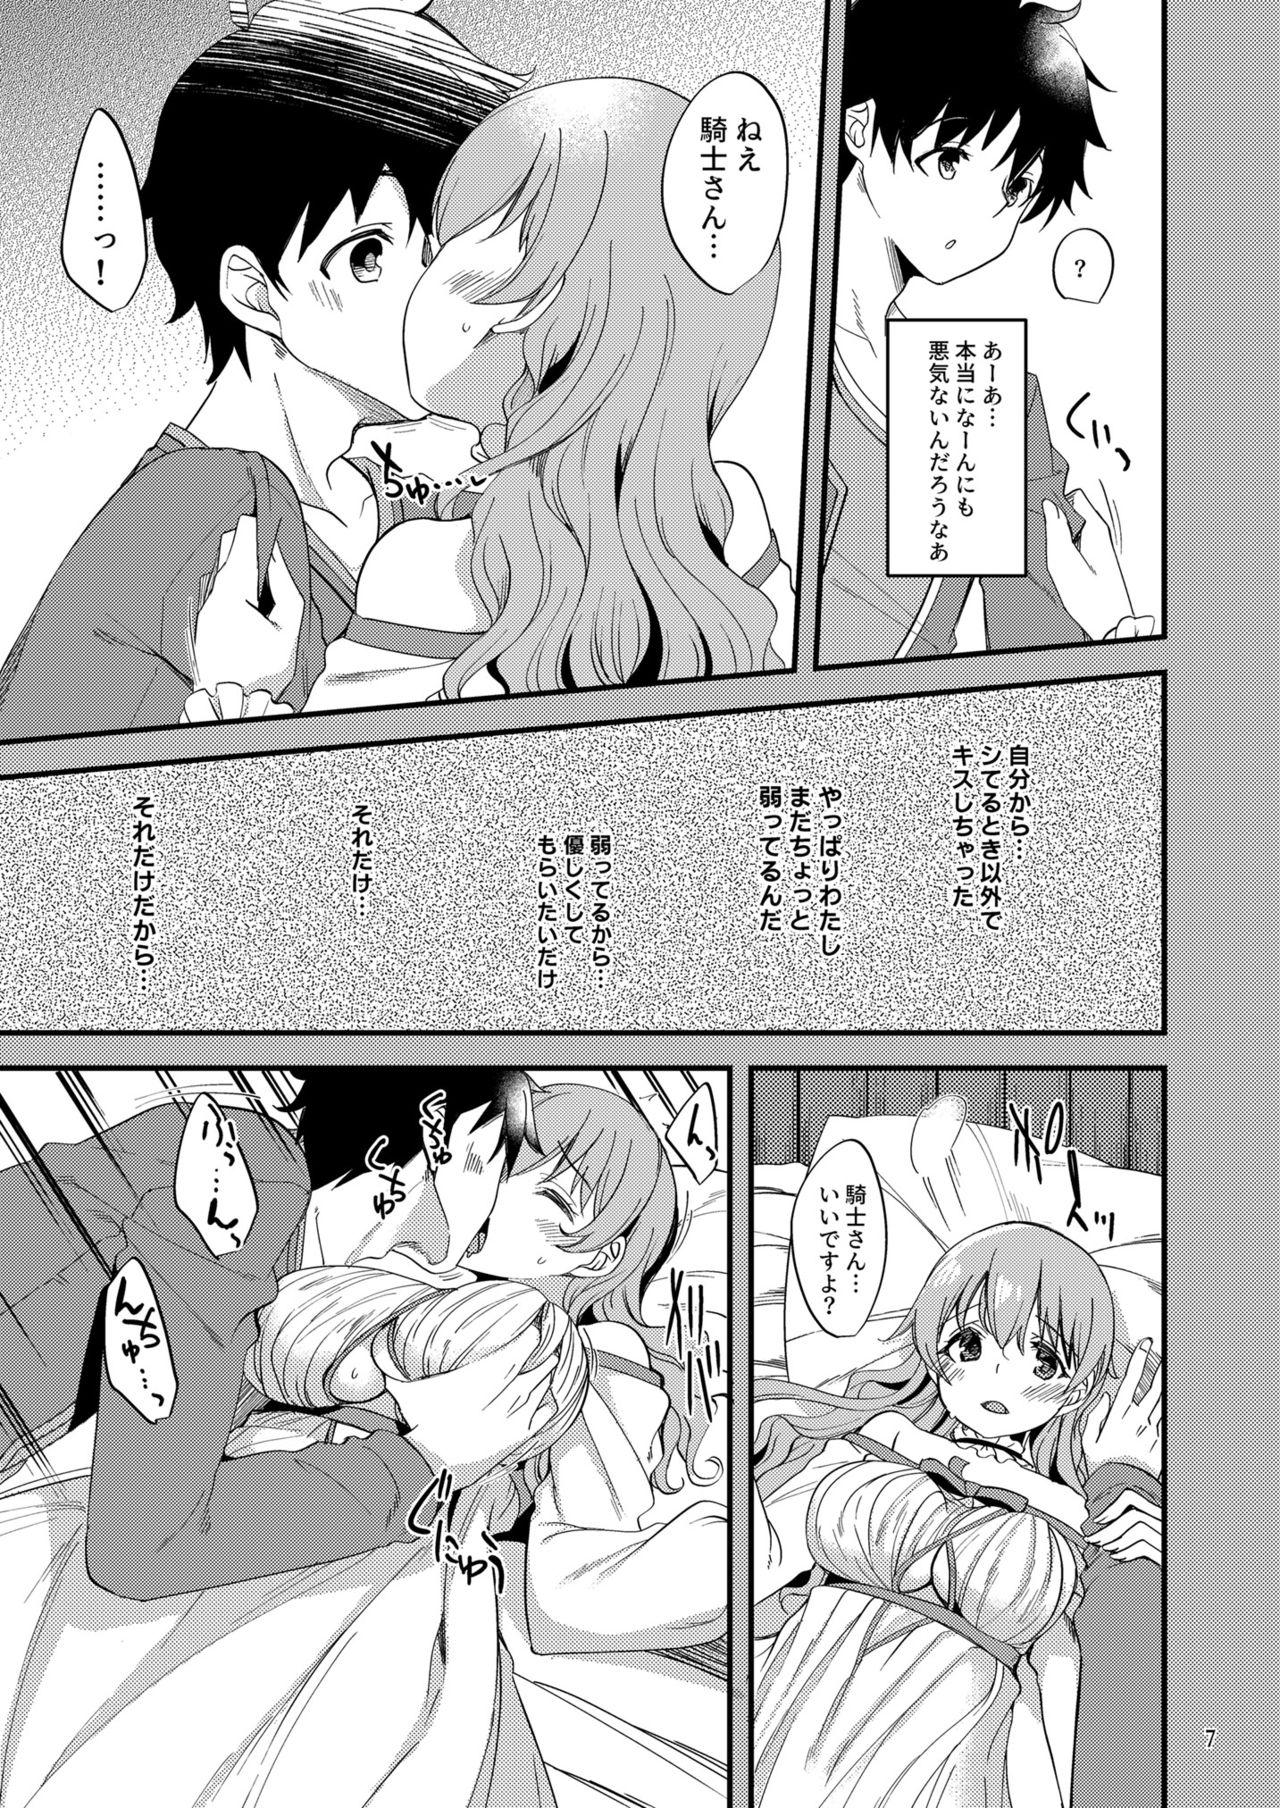 Passion Tsumugi Make Heroine Move!! 06 - Princess connect Gay Brownhair - Page 6